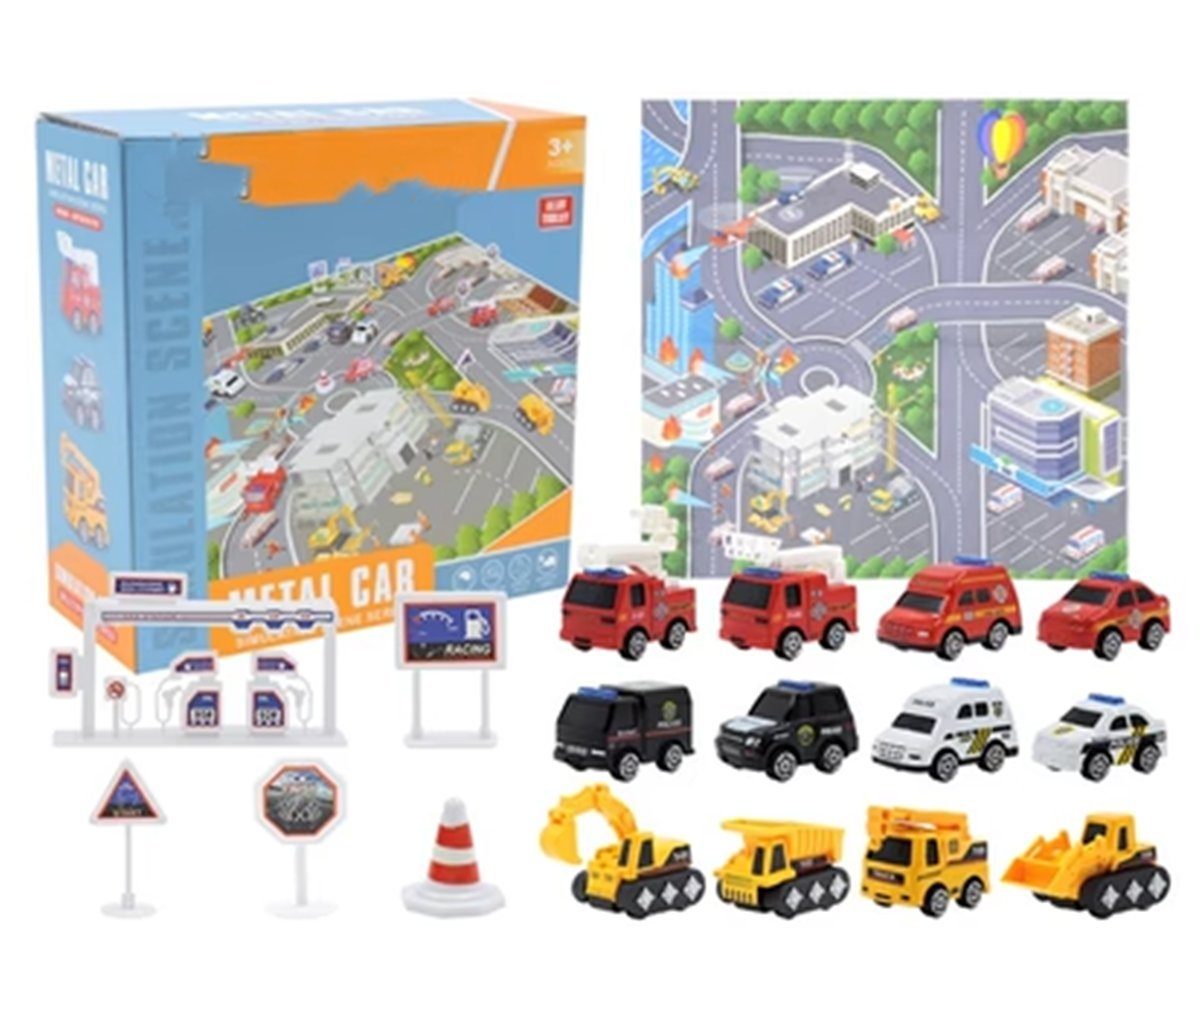 Die Sterne Spielzeug-Adventskalender Weihnachts-Countdown-Kalender, Automodell-Set aus Legierung für Kinder | Spielzeug-Adventskalender